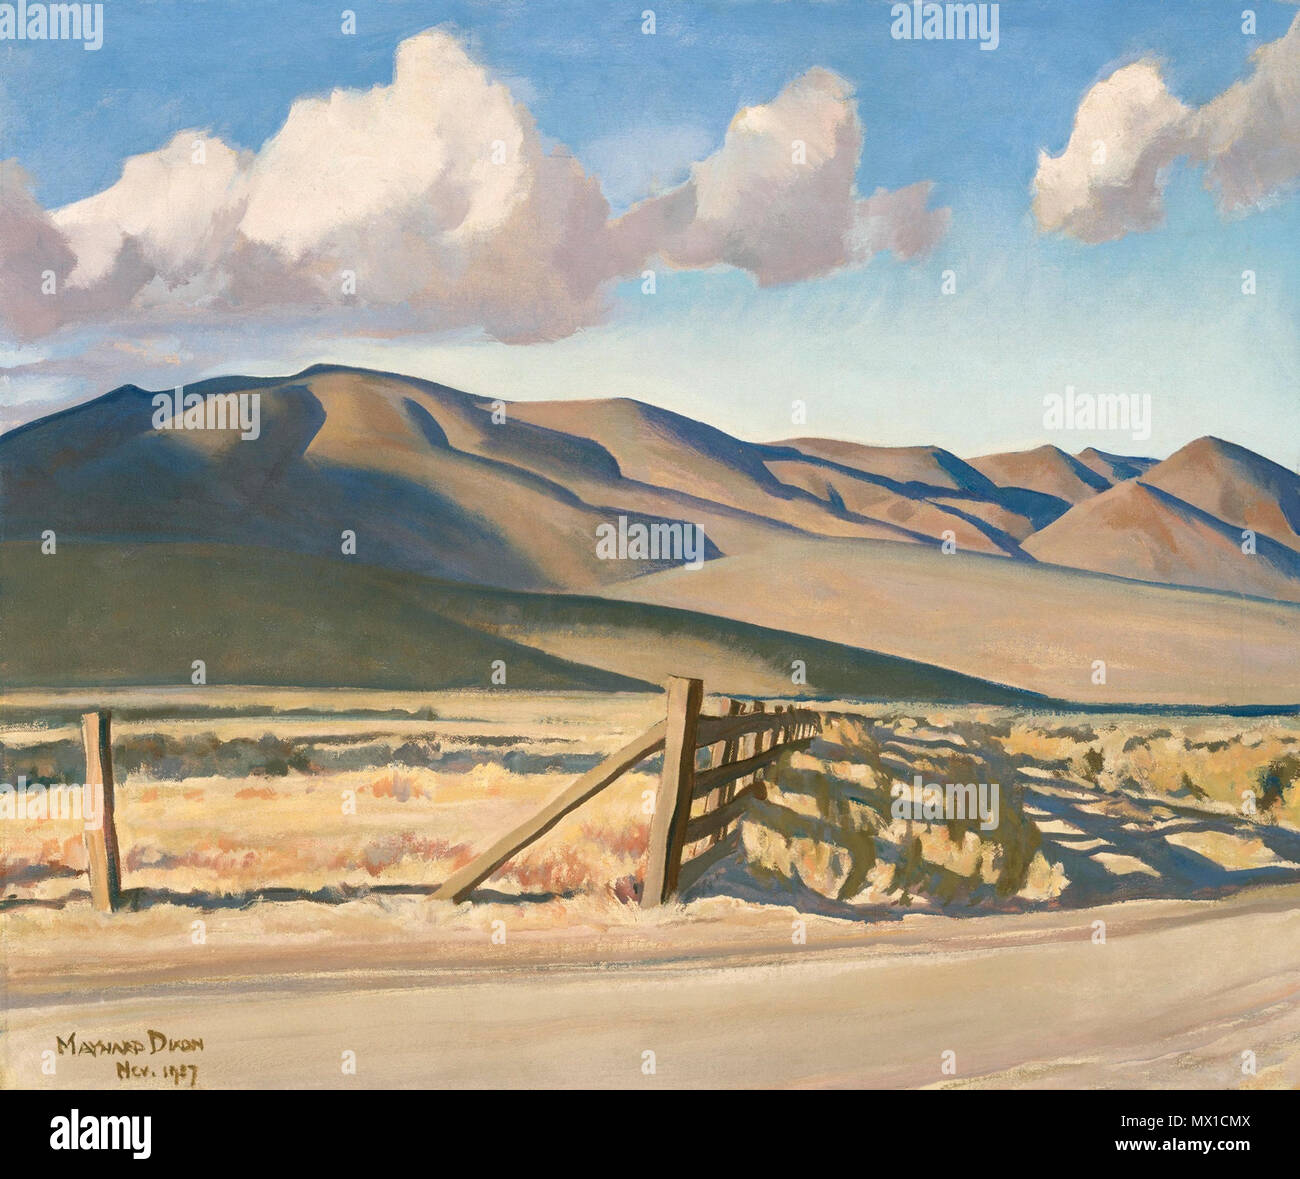 . Nevada Hügel. Englisch: modernistischen Malerei des amerikanischen Künstlers. 8. Mai 2002 409 Maynard Dixon "Nevada Hills" Öl auf Leinwand, 25" x 30" Stockfoto